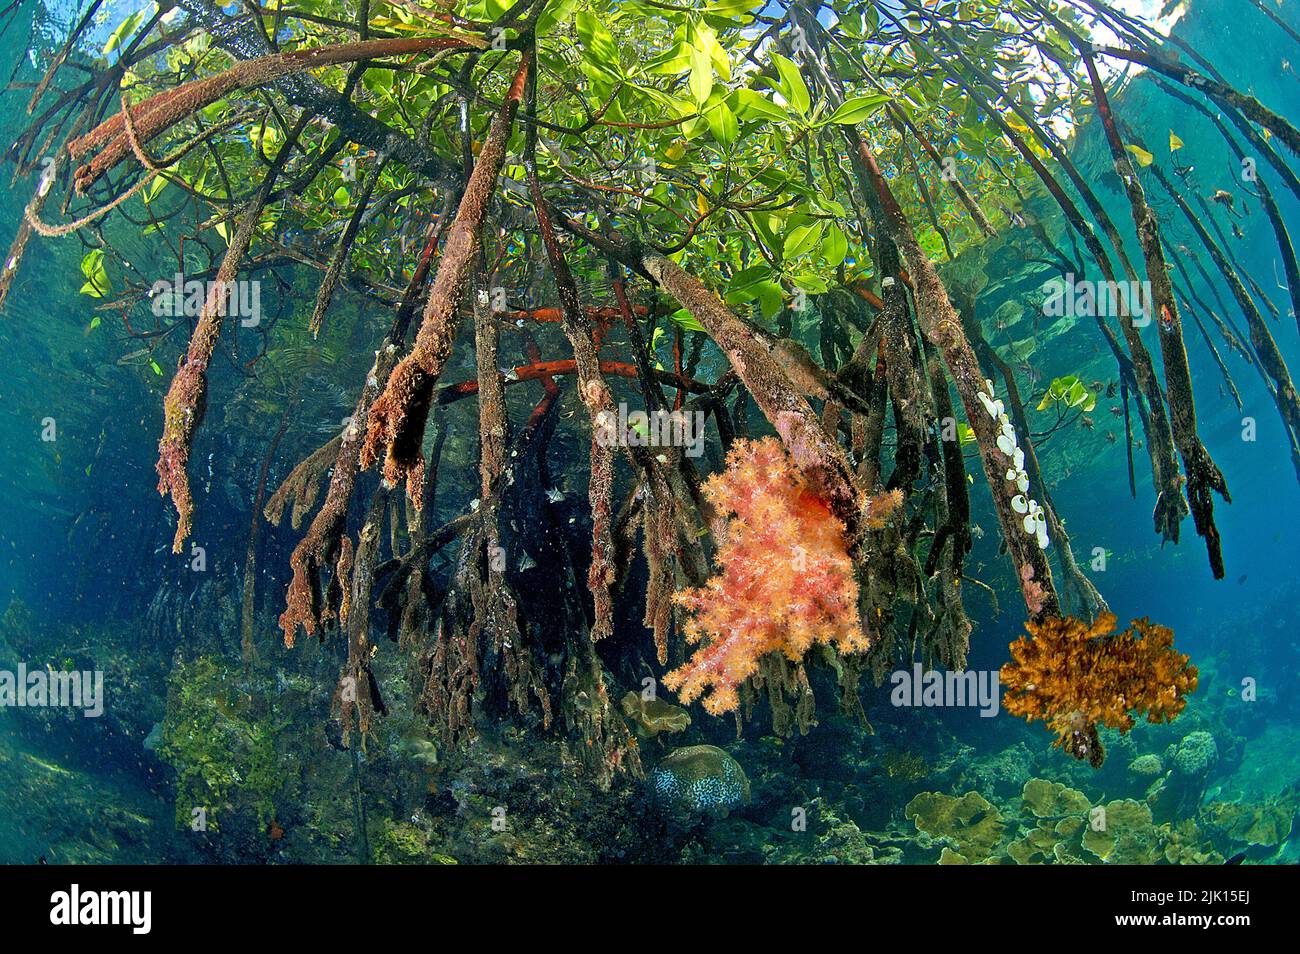 Rote Mangroven (Rhizophora Mangle), überwuchert mit Weichkorallen (Dendronephthya sp.), Mangroven sind weltweit geschützt, Russel-Inseln, Salomonen-Inseln Stockfoto